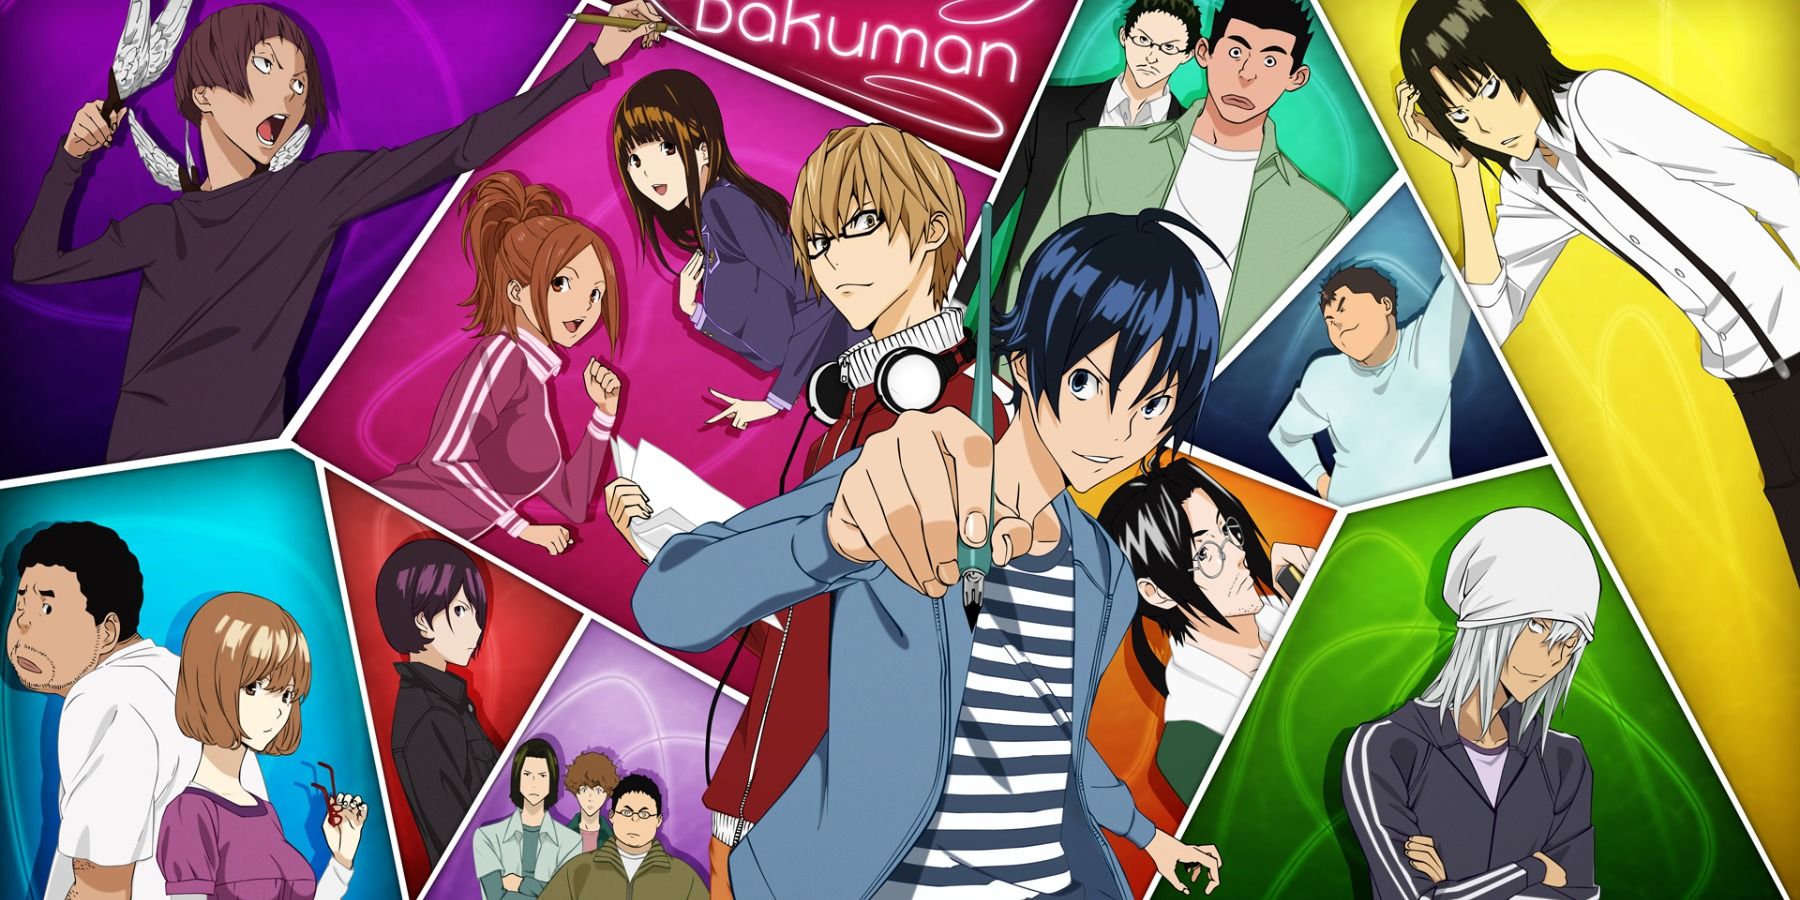 Affiche de l'anime Bakuman avec ses personnages